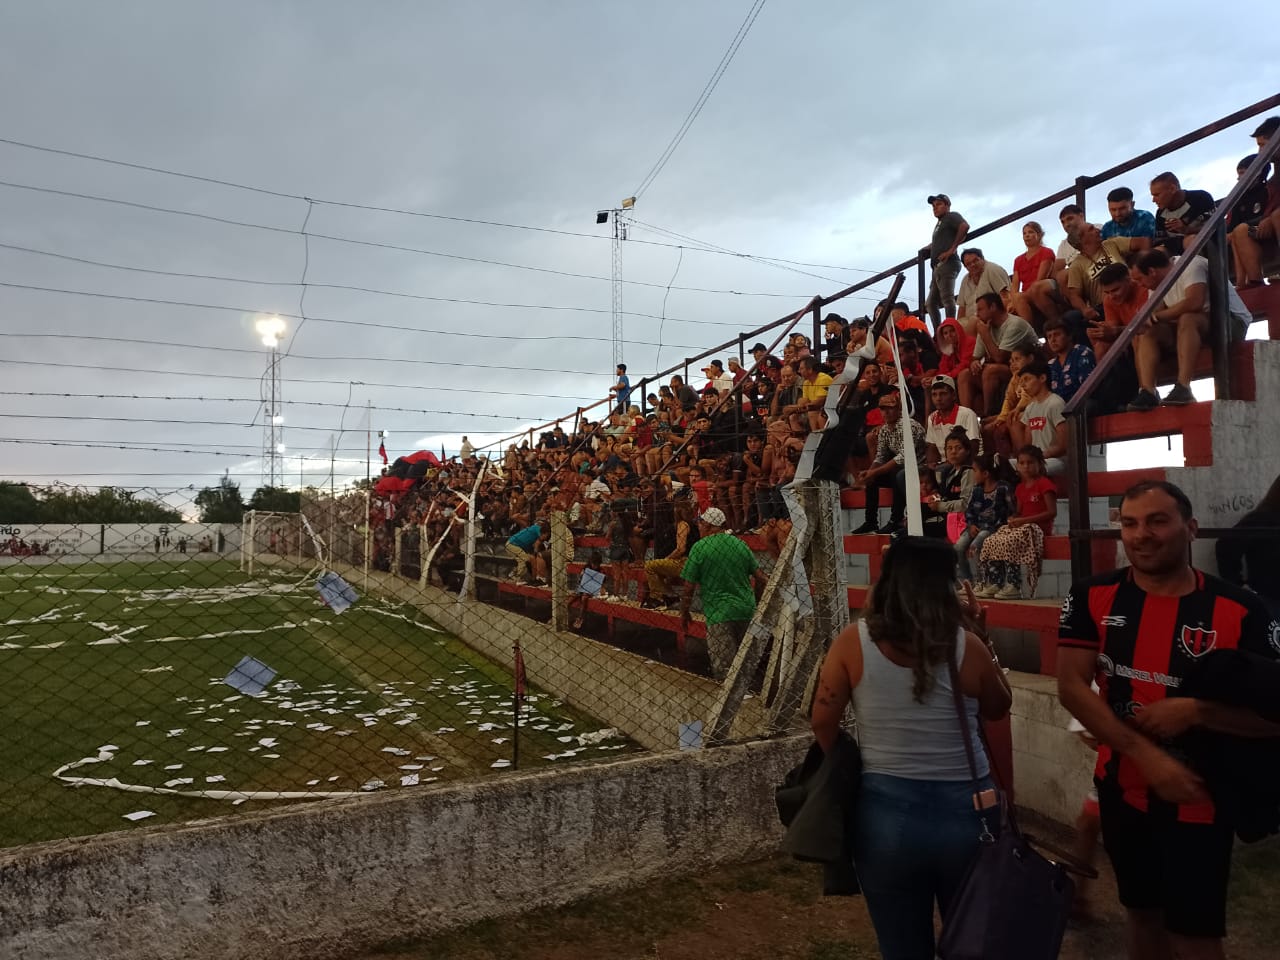 Deportivo Comercio de Villa Dolores vs Sportivo Forchieri